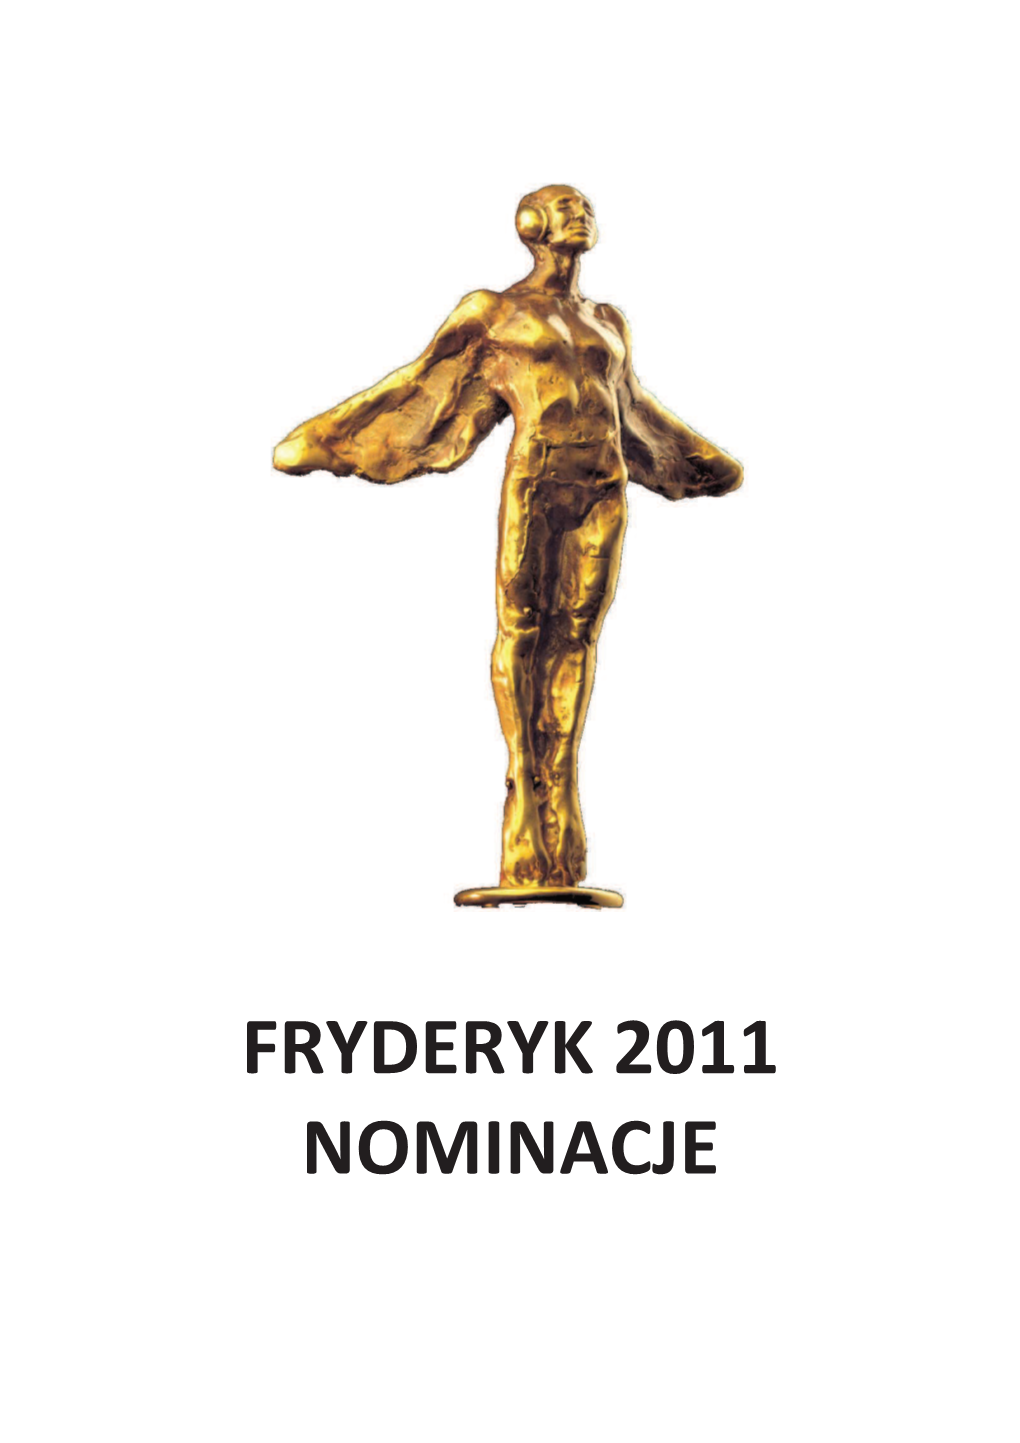 Fryderyk 2011 Nominacje